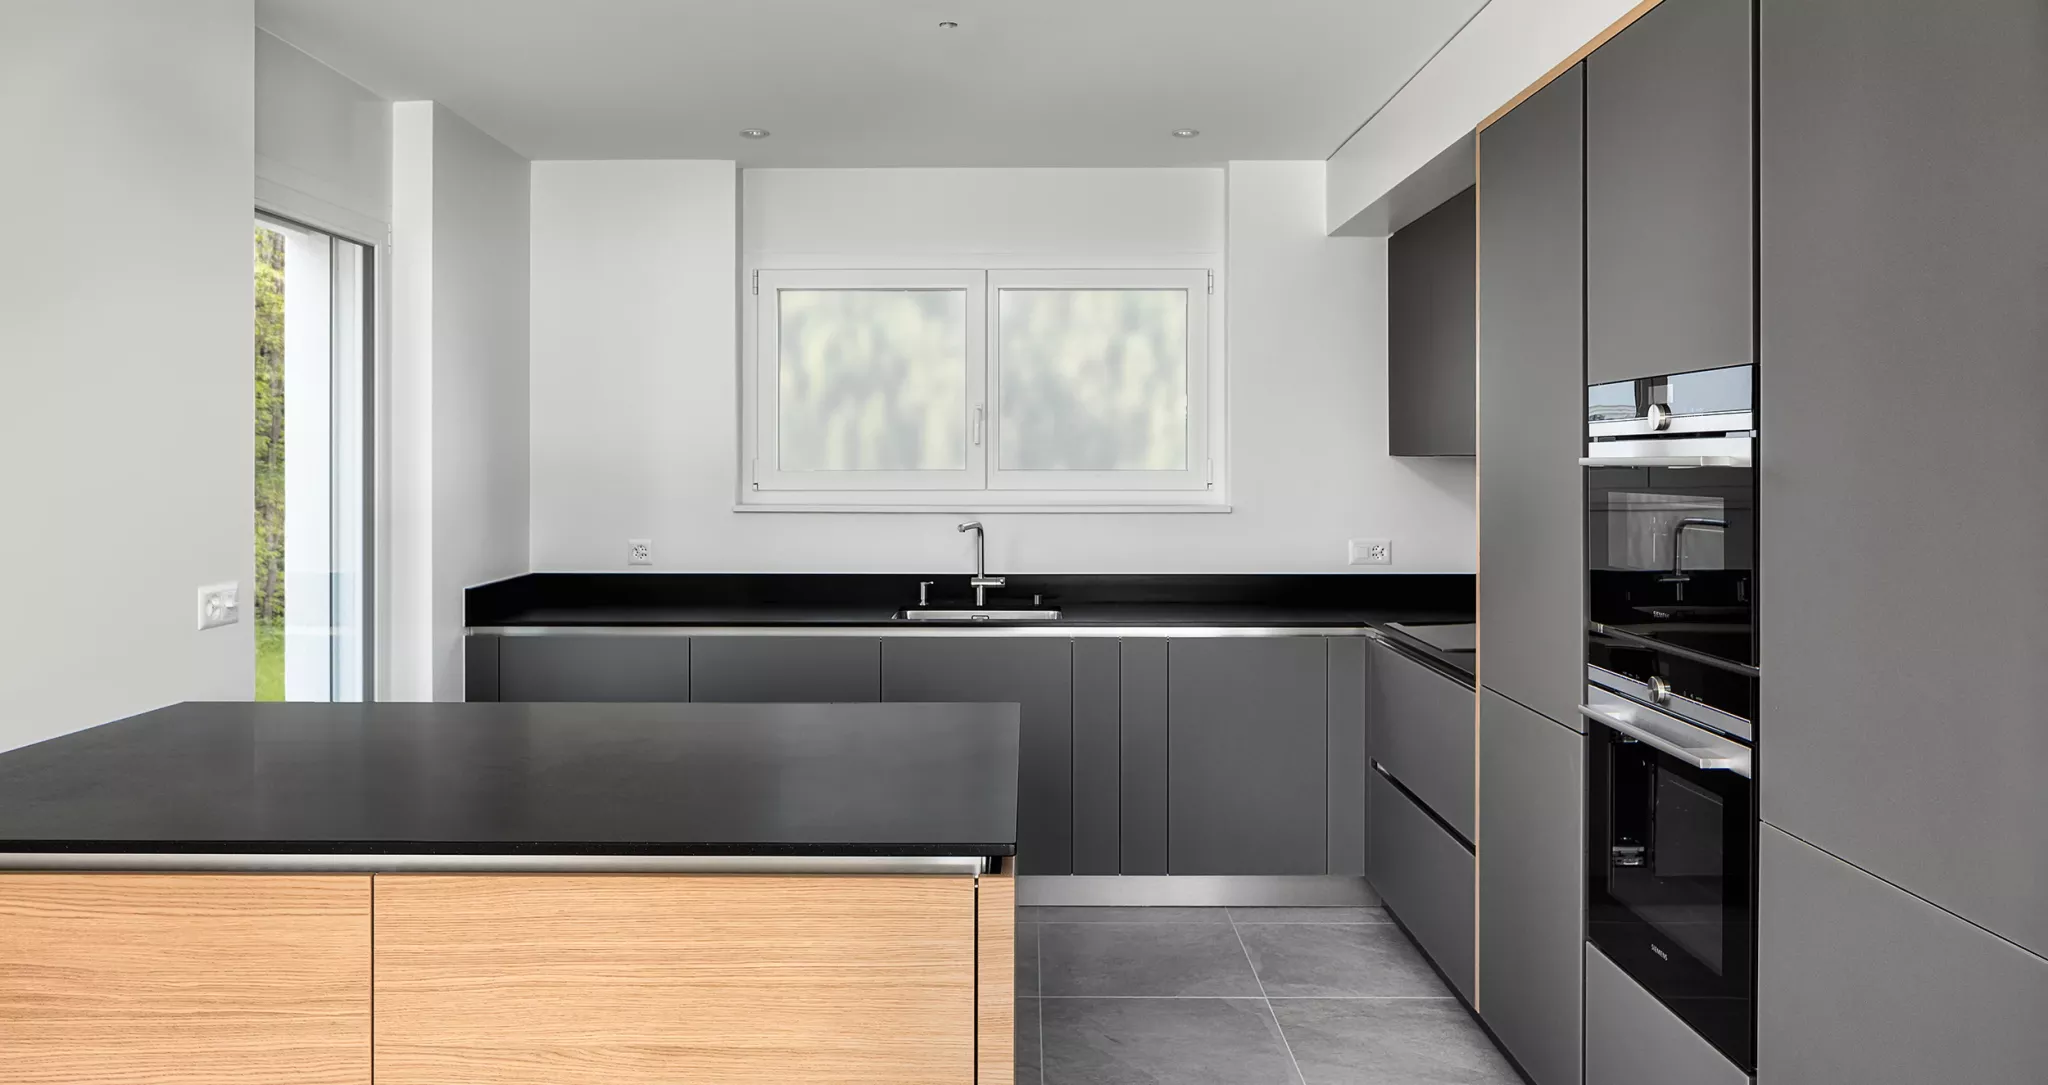 mobilier de cuisine de couleur grise dans une villa, photographie d'immobilier